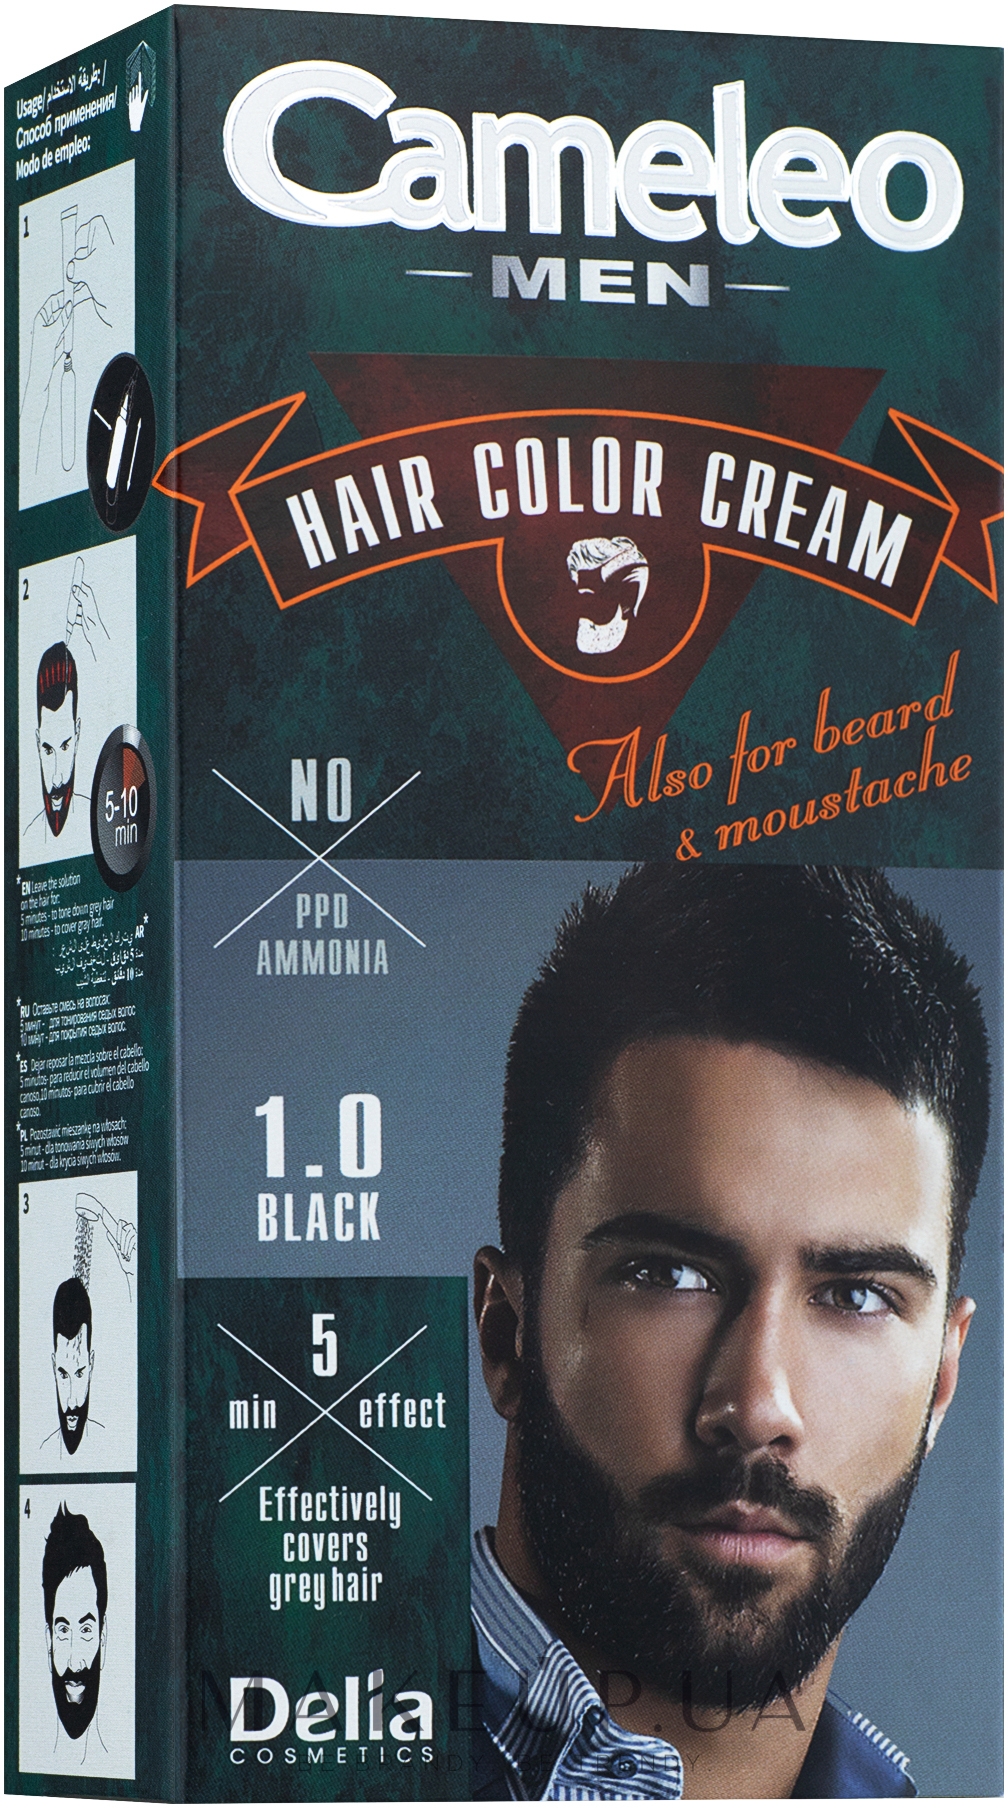 Мужская краска для волос - Delia Cameleo Men Hair Color Cream — фото 1.0 - Black